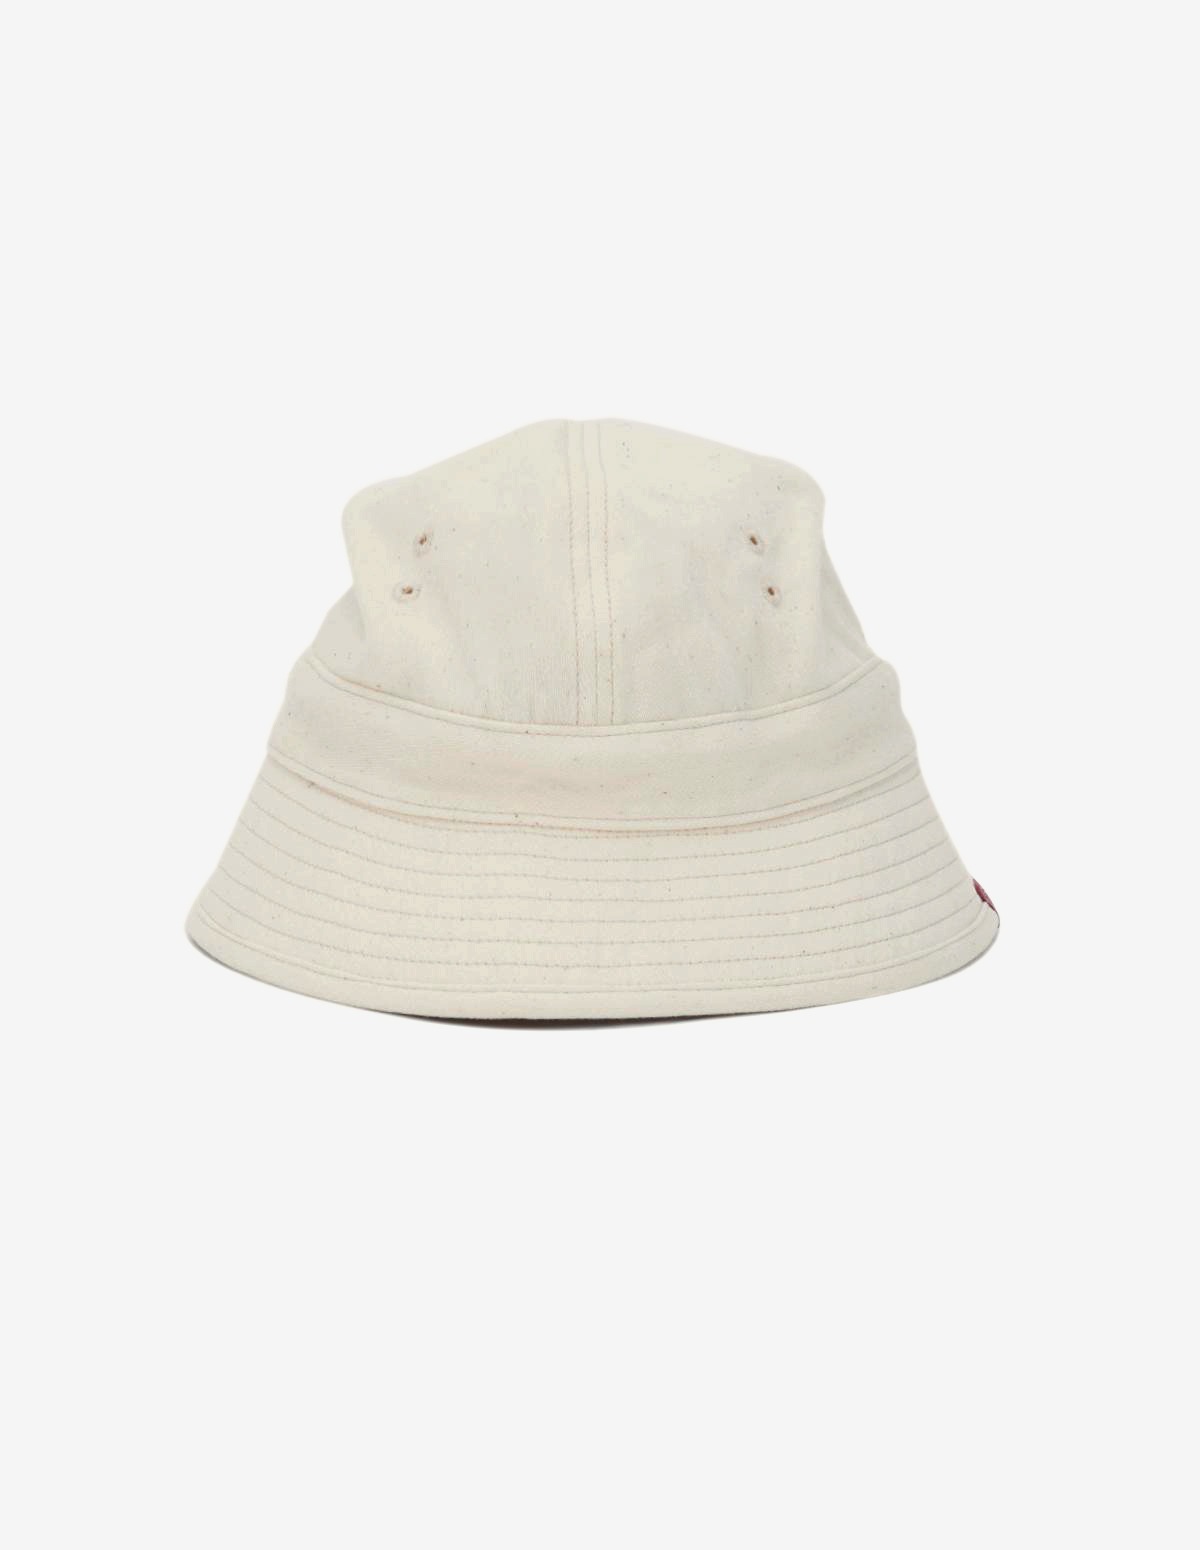 US NAVY HAT (White)